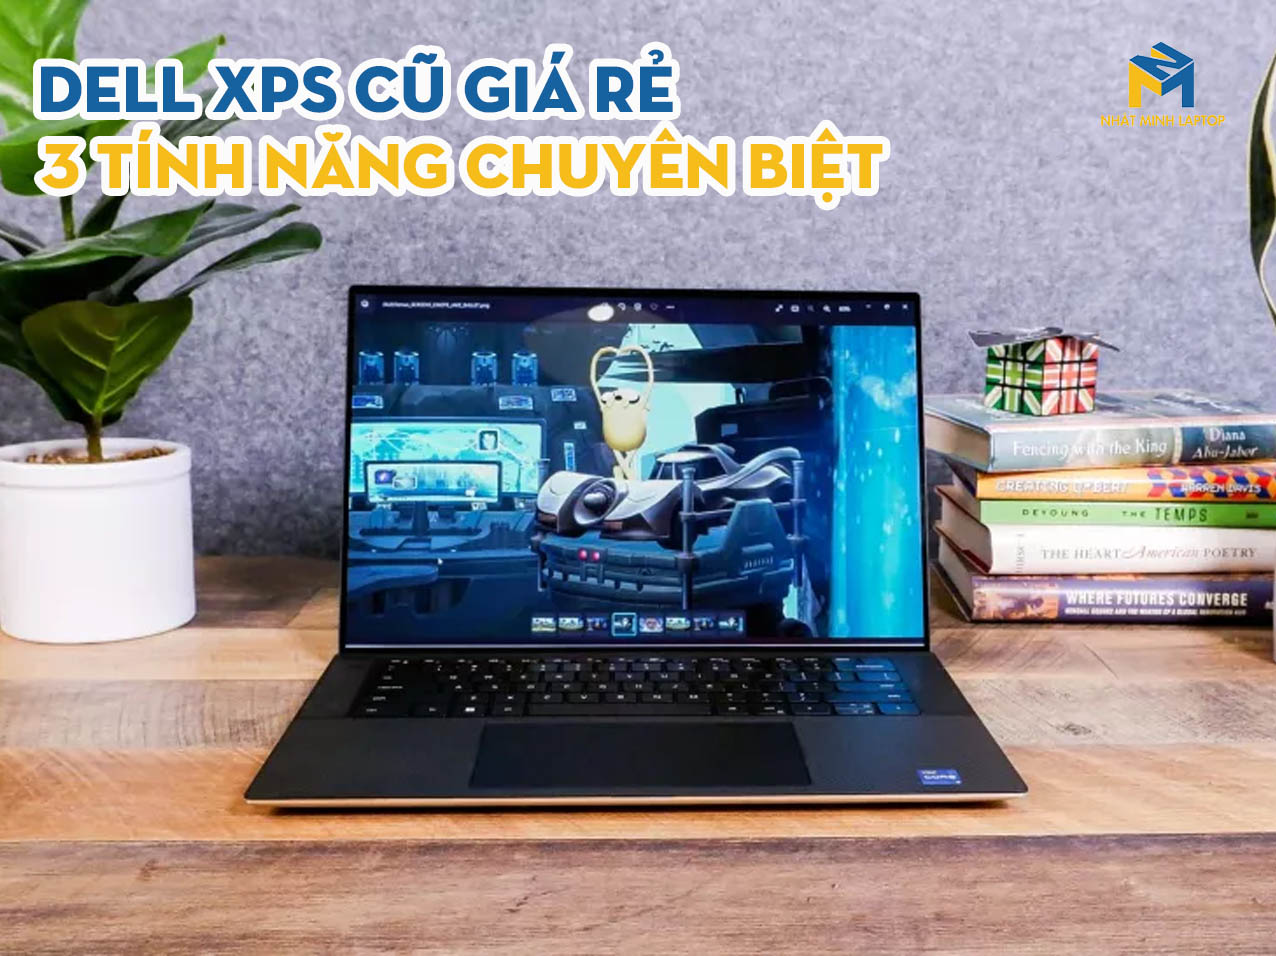 Laptop Dell XPS Cũ Giá Rẻ với 3 tính năng chuyên biệt